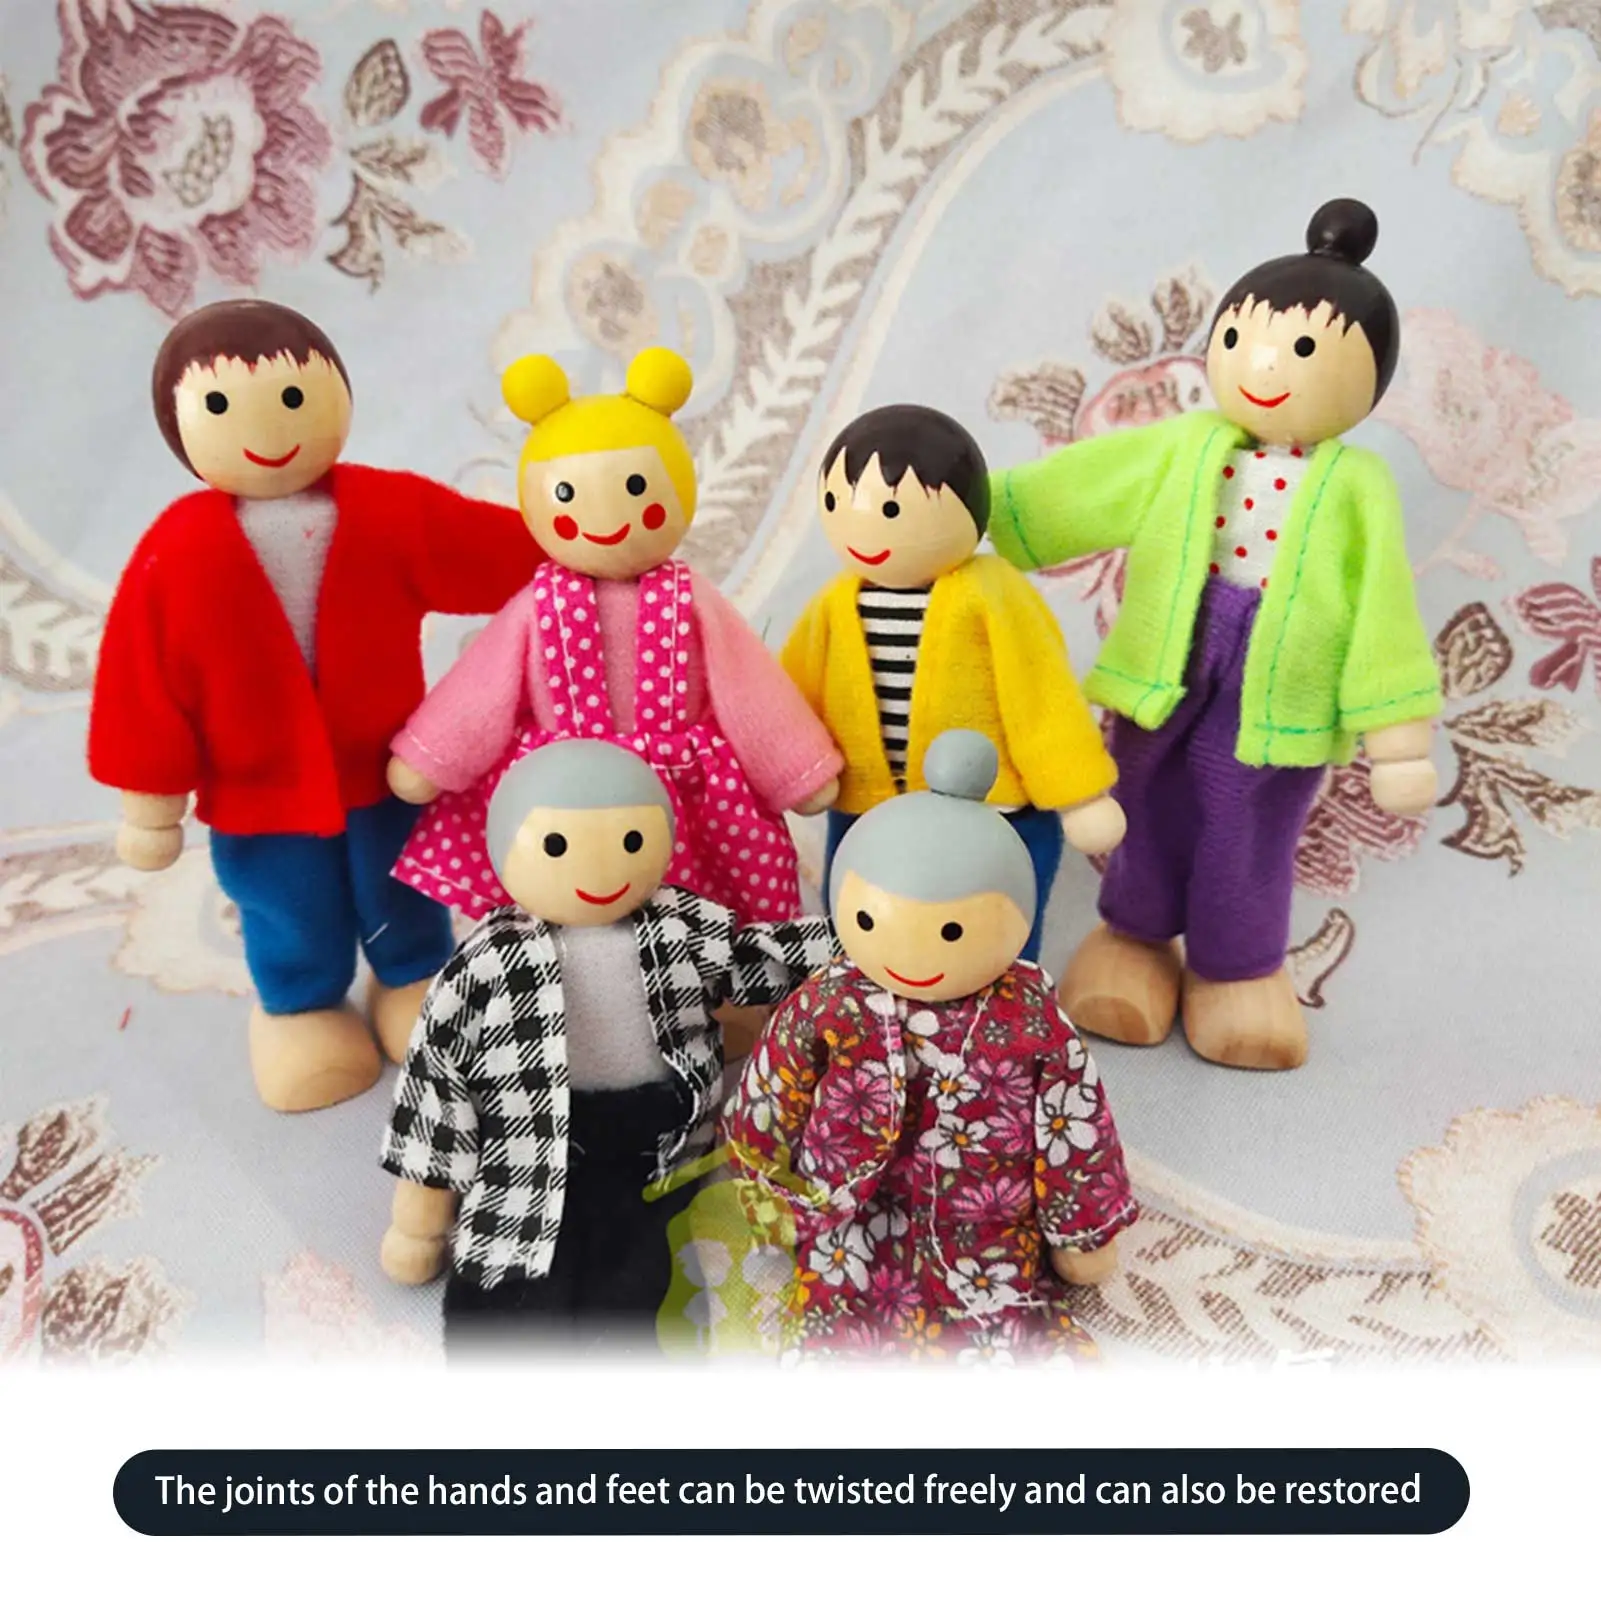 

Похожая на настоящую 6 шт. марионетка куклы для всей семьи, из мягкой ткани для девочек и мальчиков детские игрушки куклы как живой принцессы...